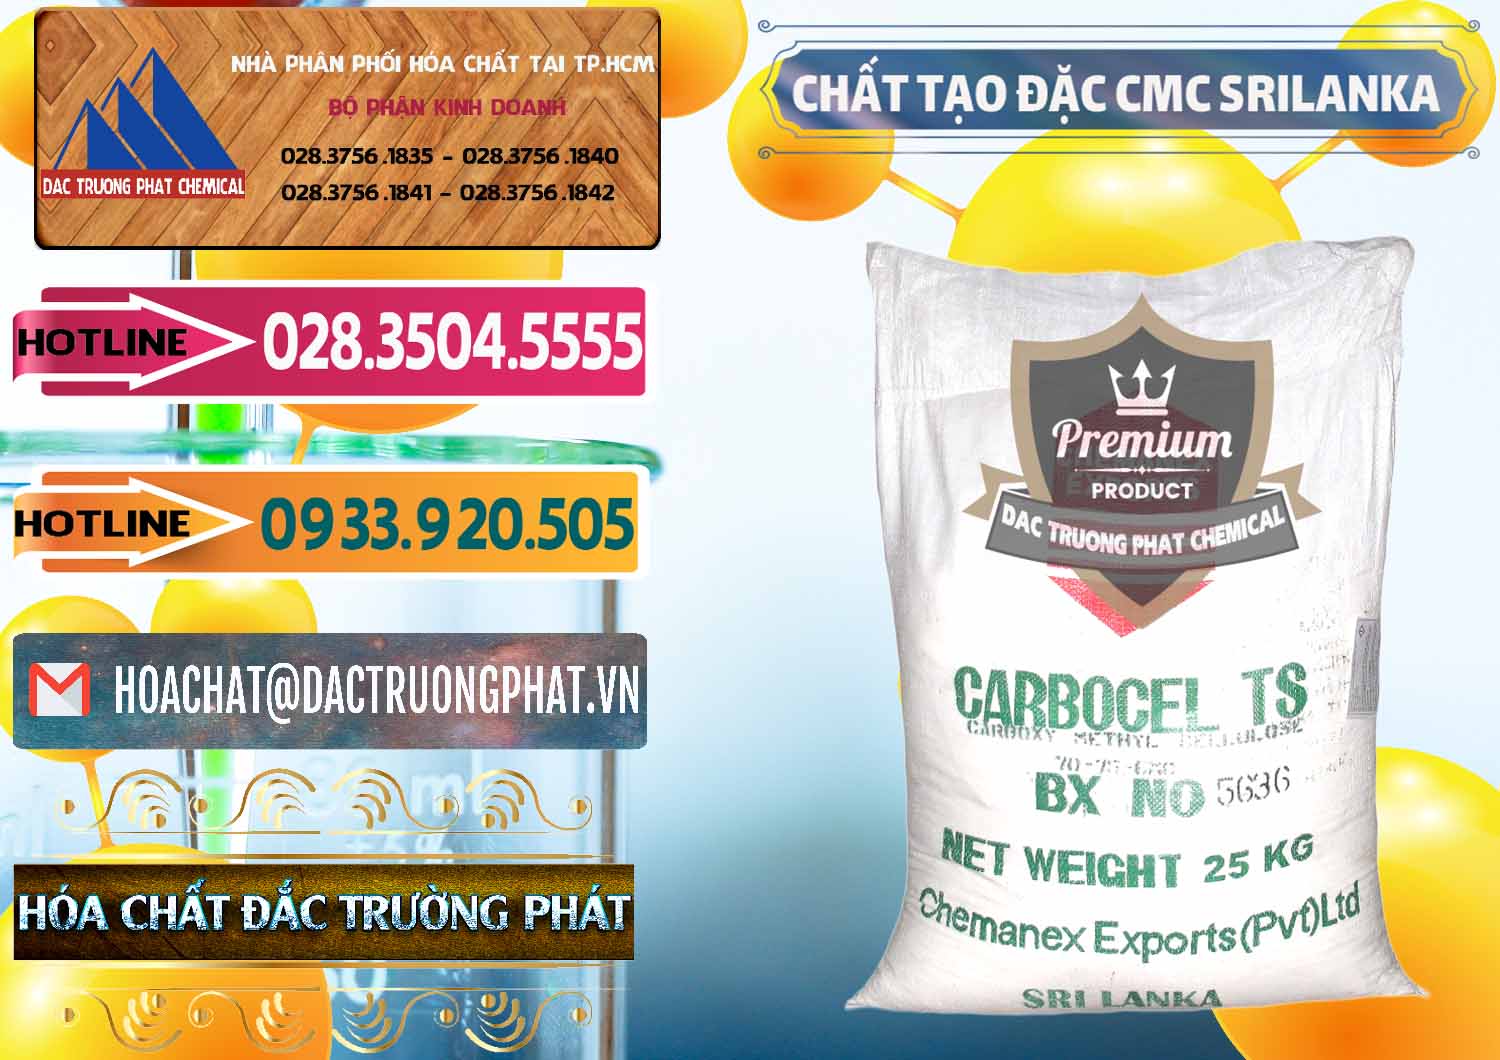 Cty chuyên bán - cung cấp Chất Tạo Đặc CMC - Carboxyl Methyl Cellulose Srilanka - 0045 - Nơi cung cấp - phân phối hóa chất tại TP.HCM - dactruongphat.vn